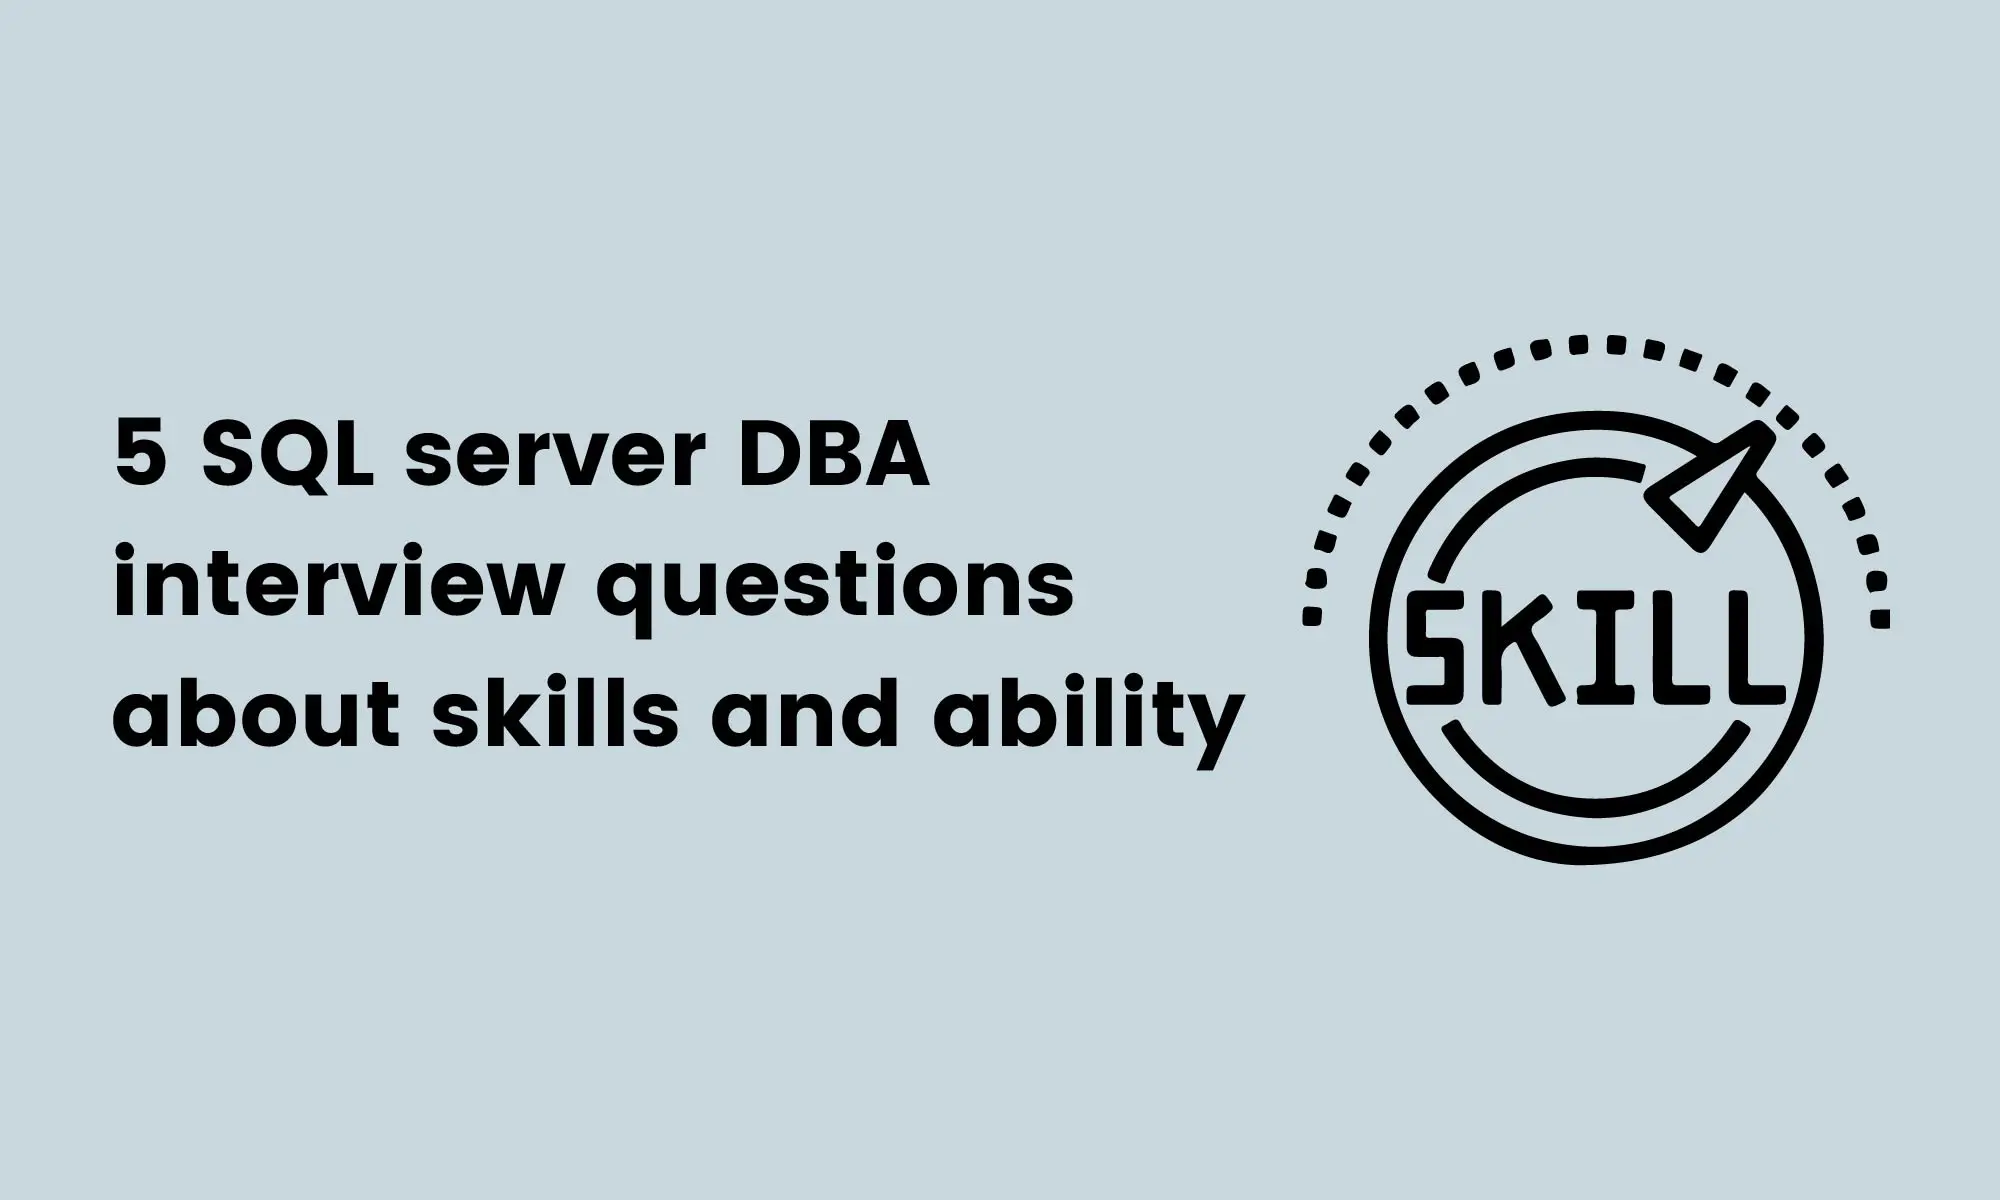 5 SQL server DBA interview questions